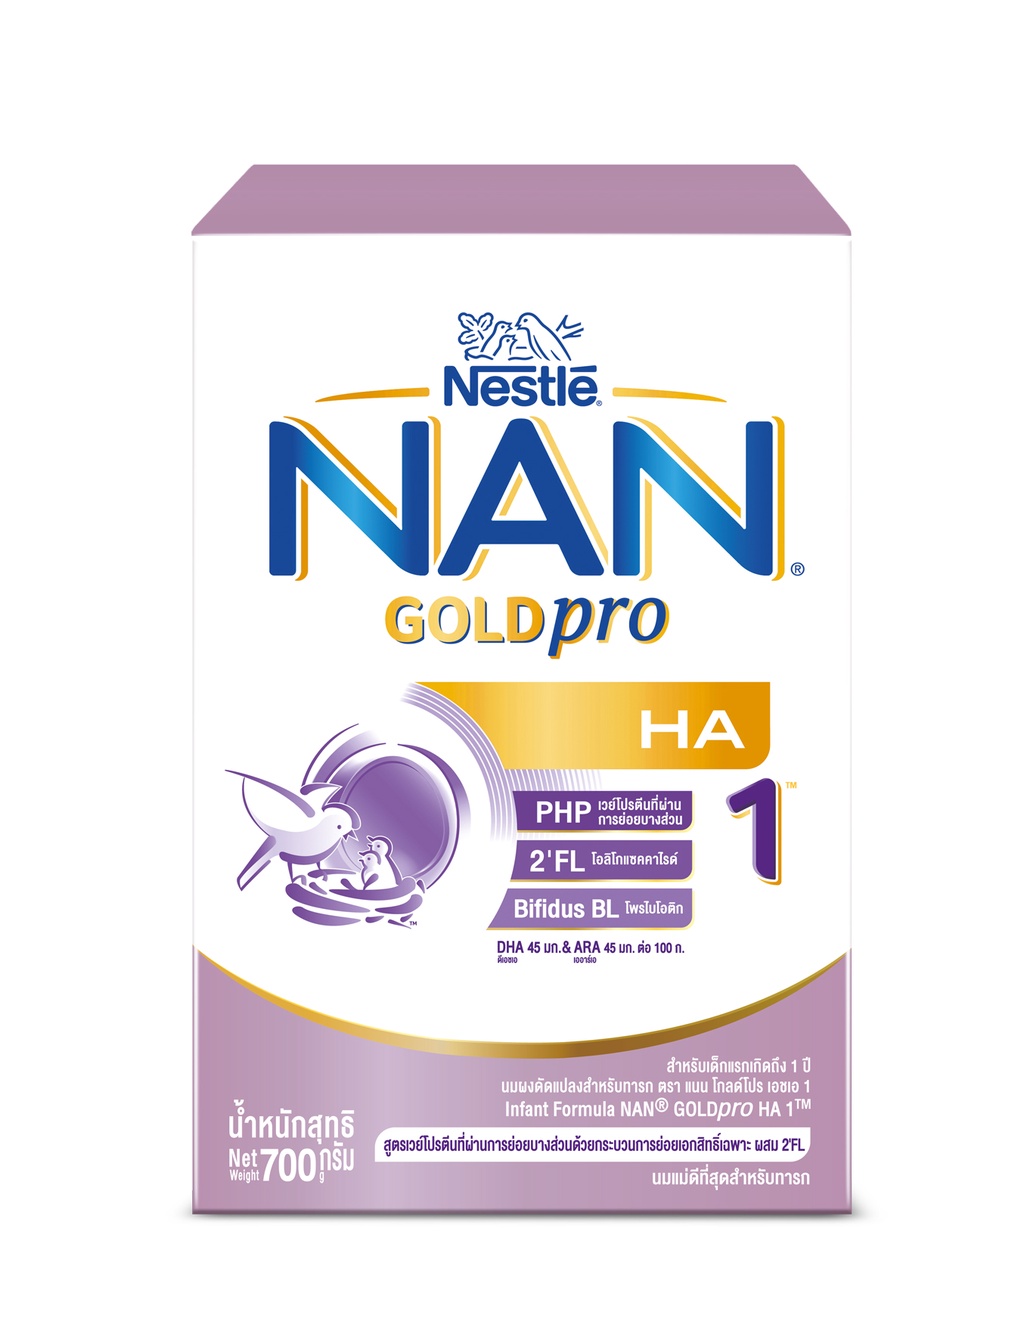 คำอธิบายเพิ่มเติมเกี่ยวกับ NAN GOLDpro นมผง แนน โกลด์โปร เอชเอ สูตร 1 700 กรัม นมผงสำหรับเด็กแรกเกิด - 1 ปี